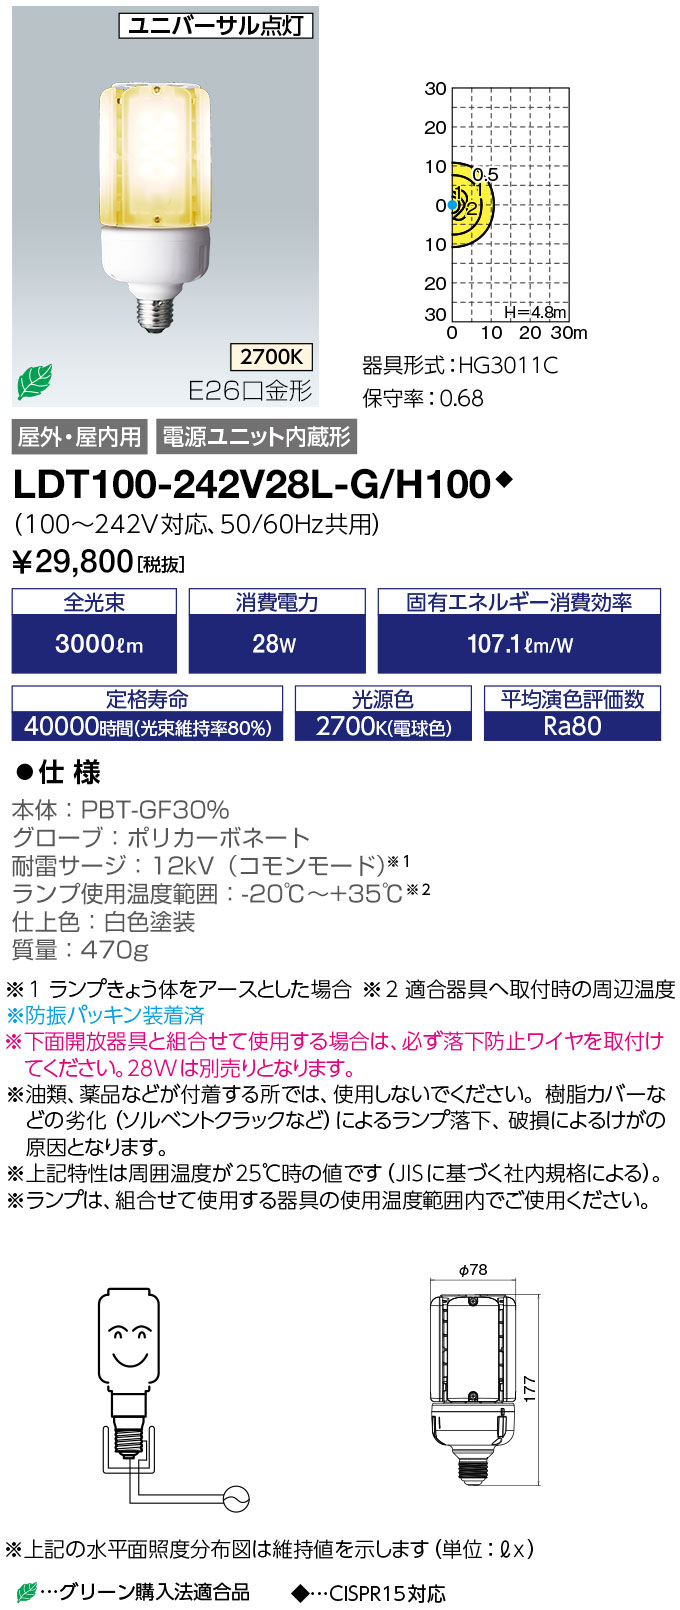 LDT100-242V28L-G-H100 | ランプ | LDT100-242V28L-G/H100レディオック 